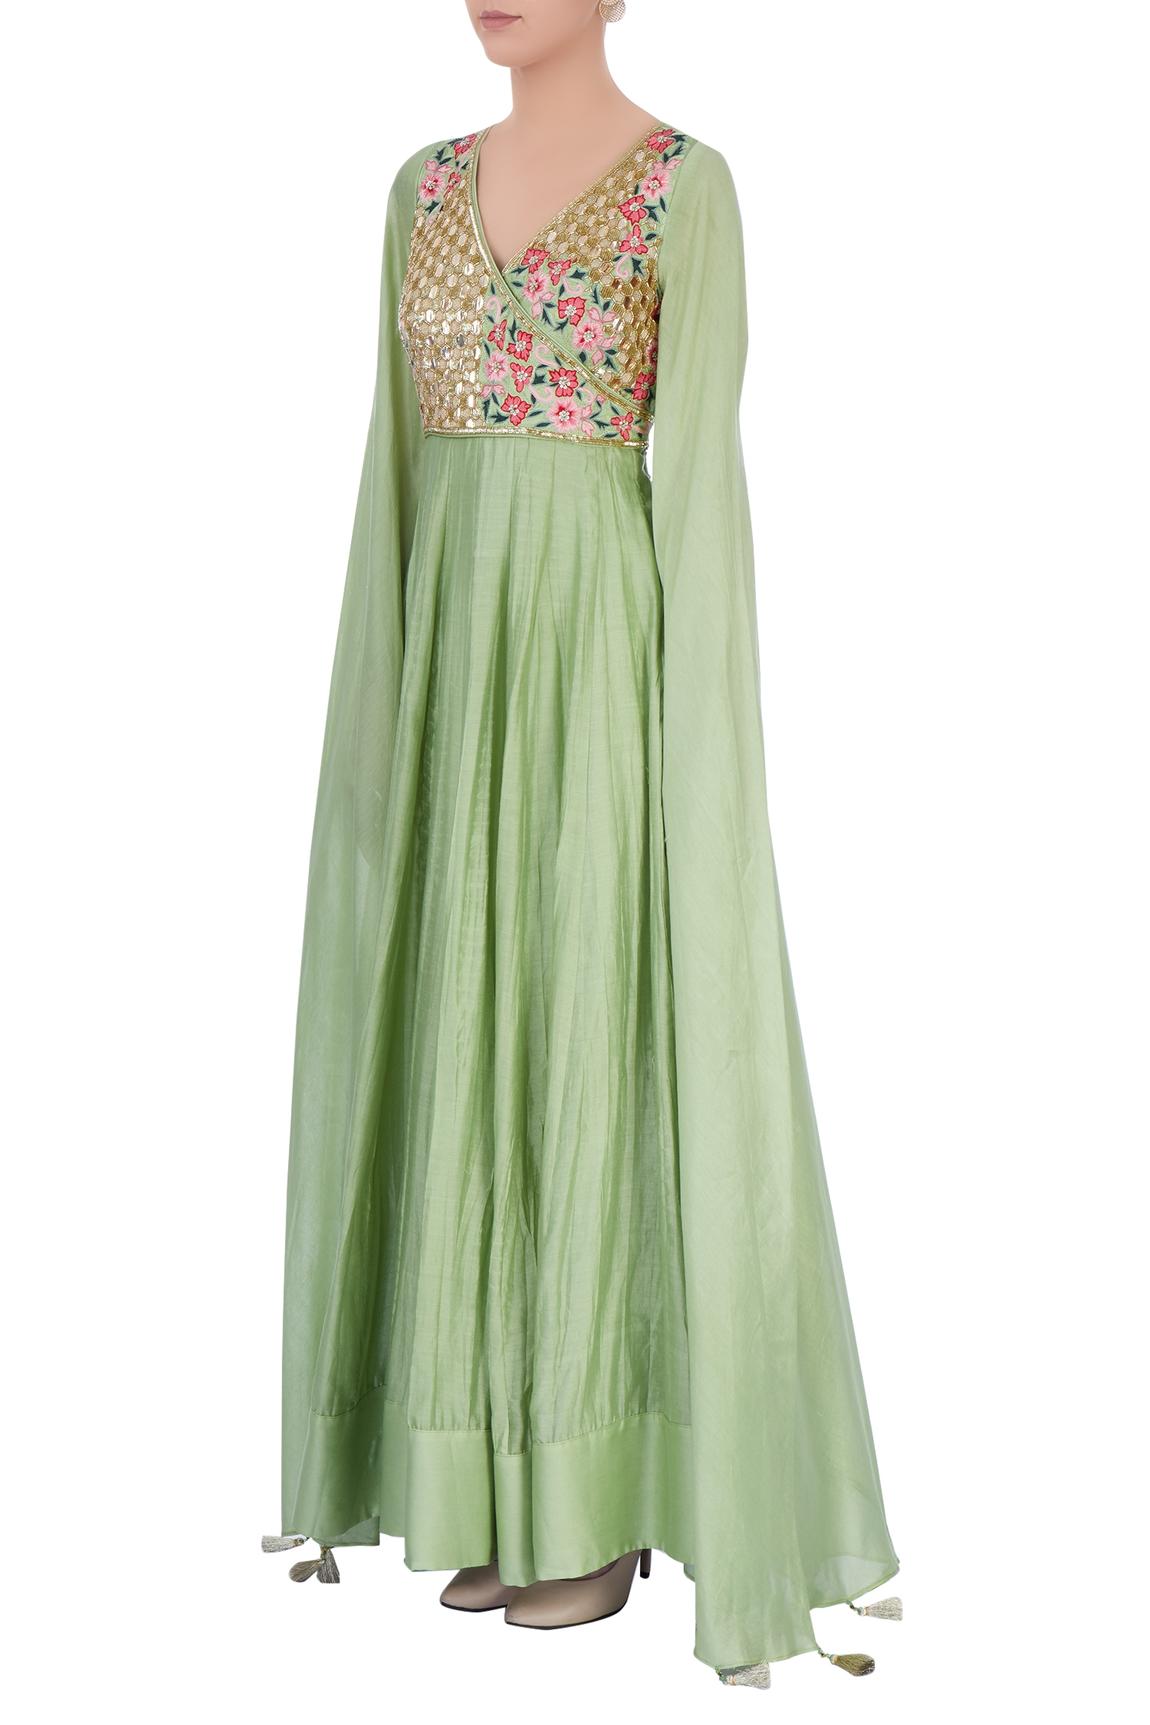 Pastel Green Embellished Anarkali Gown